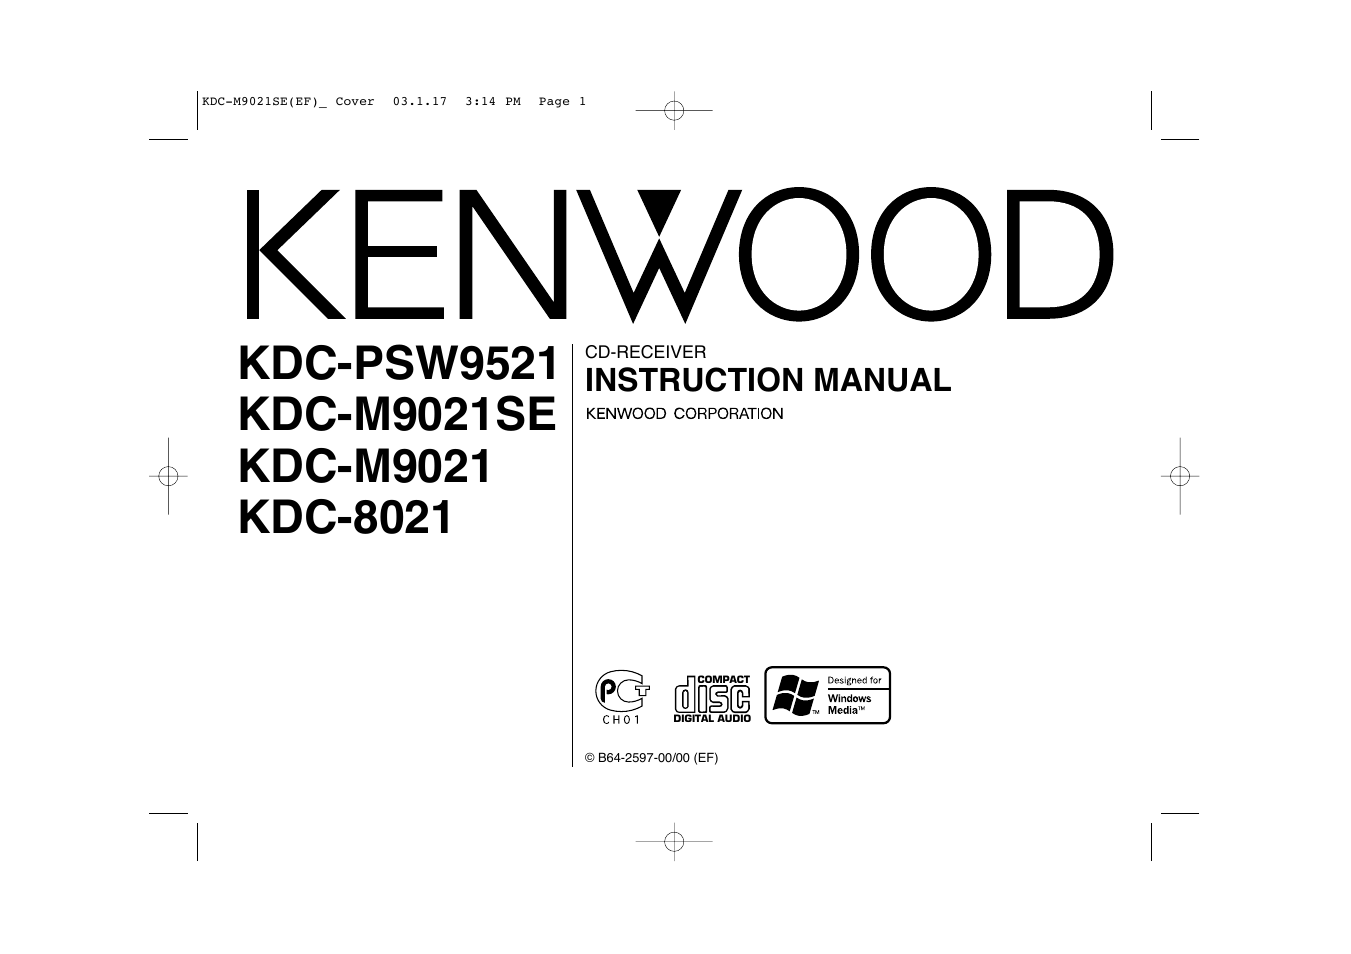 Kenwood KDC-M9021 EN User Manual | 52 pages